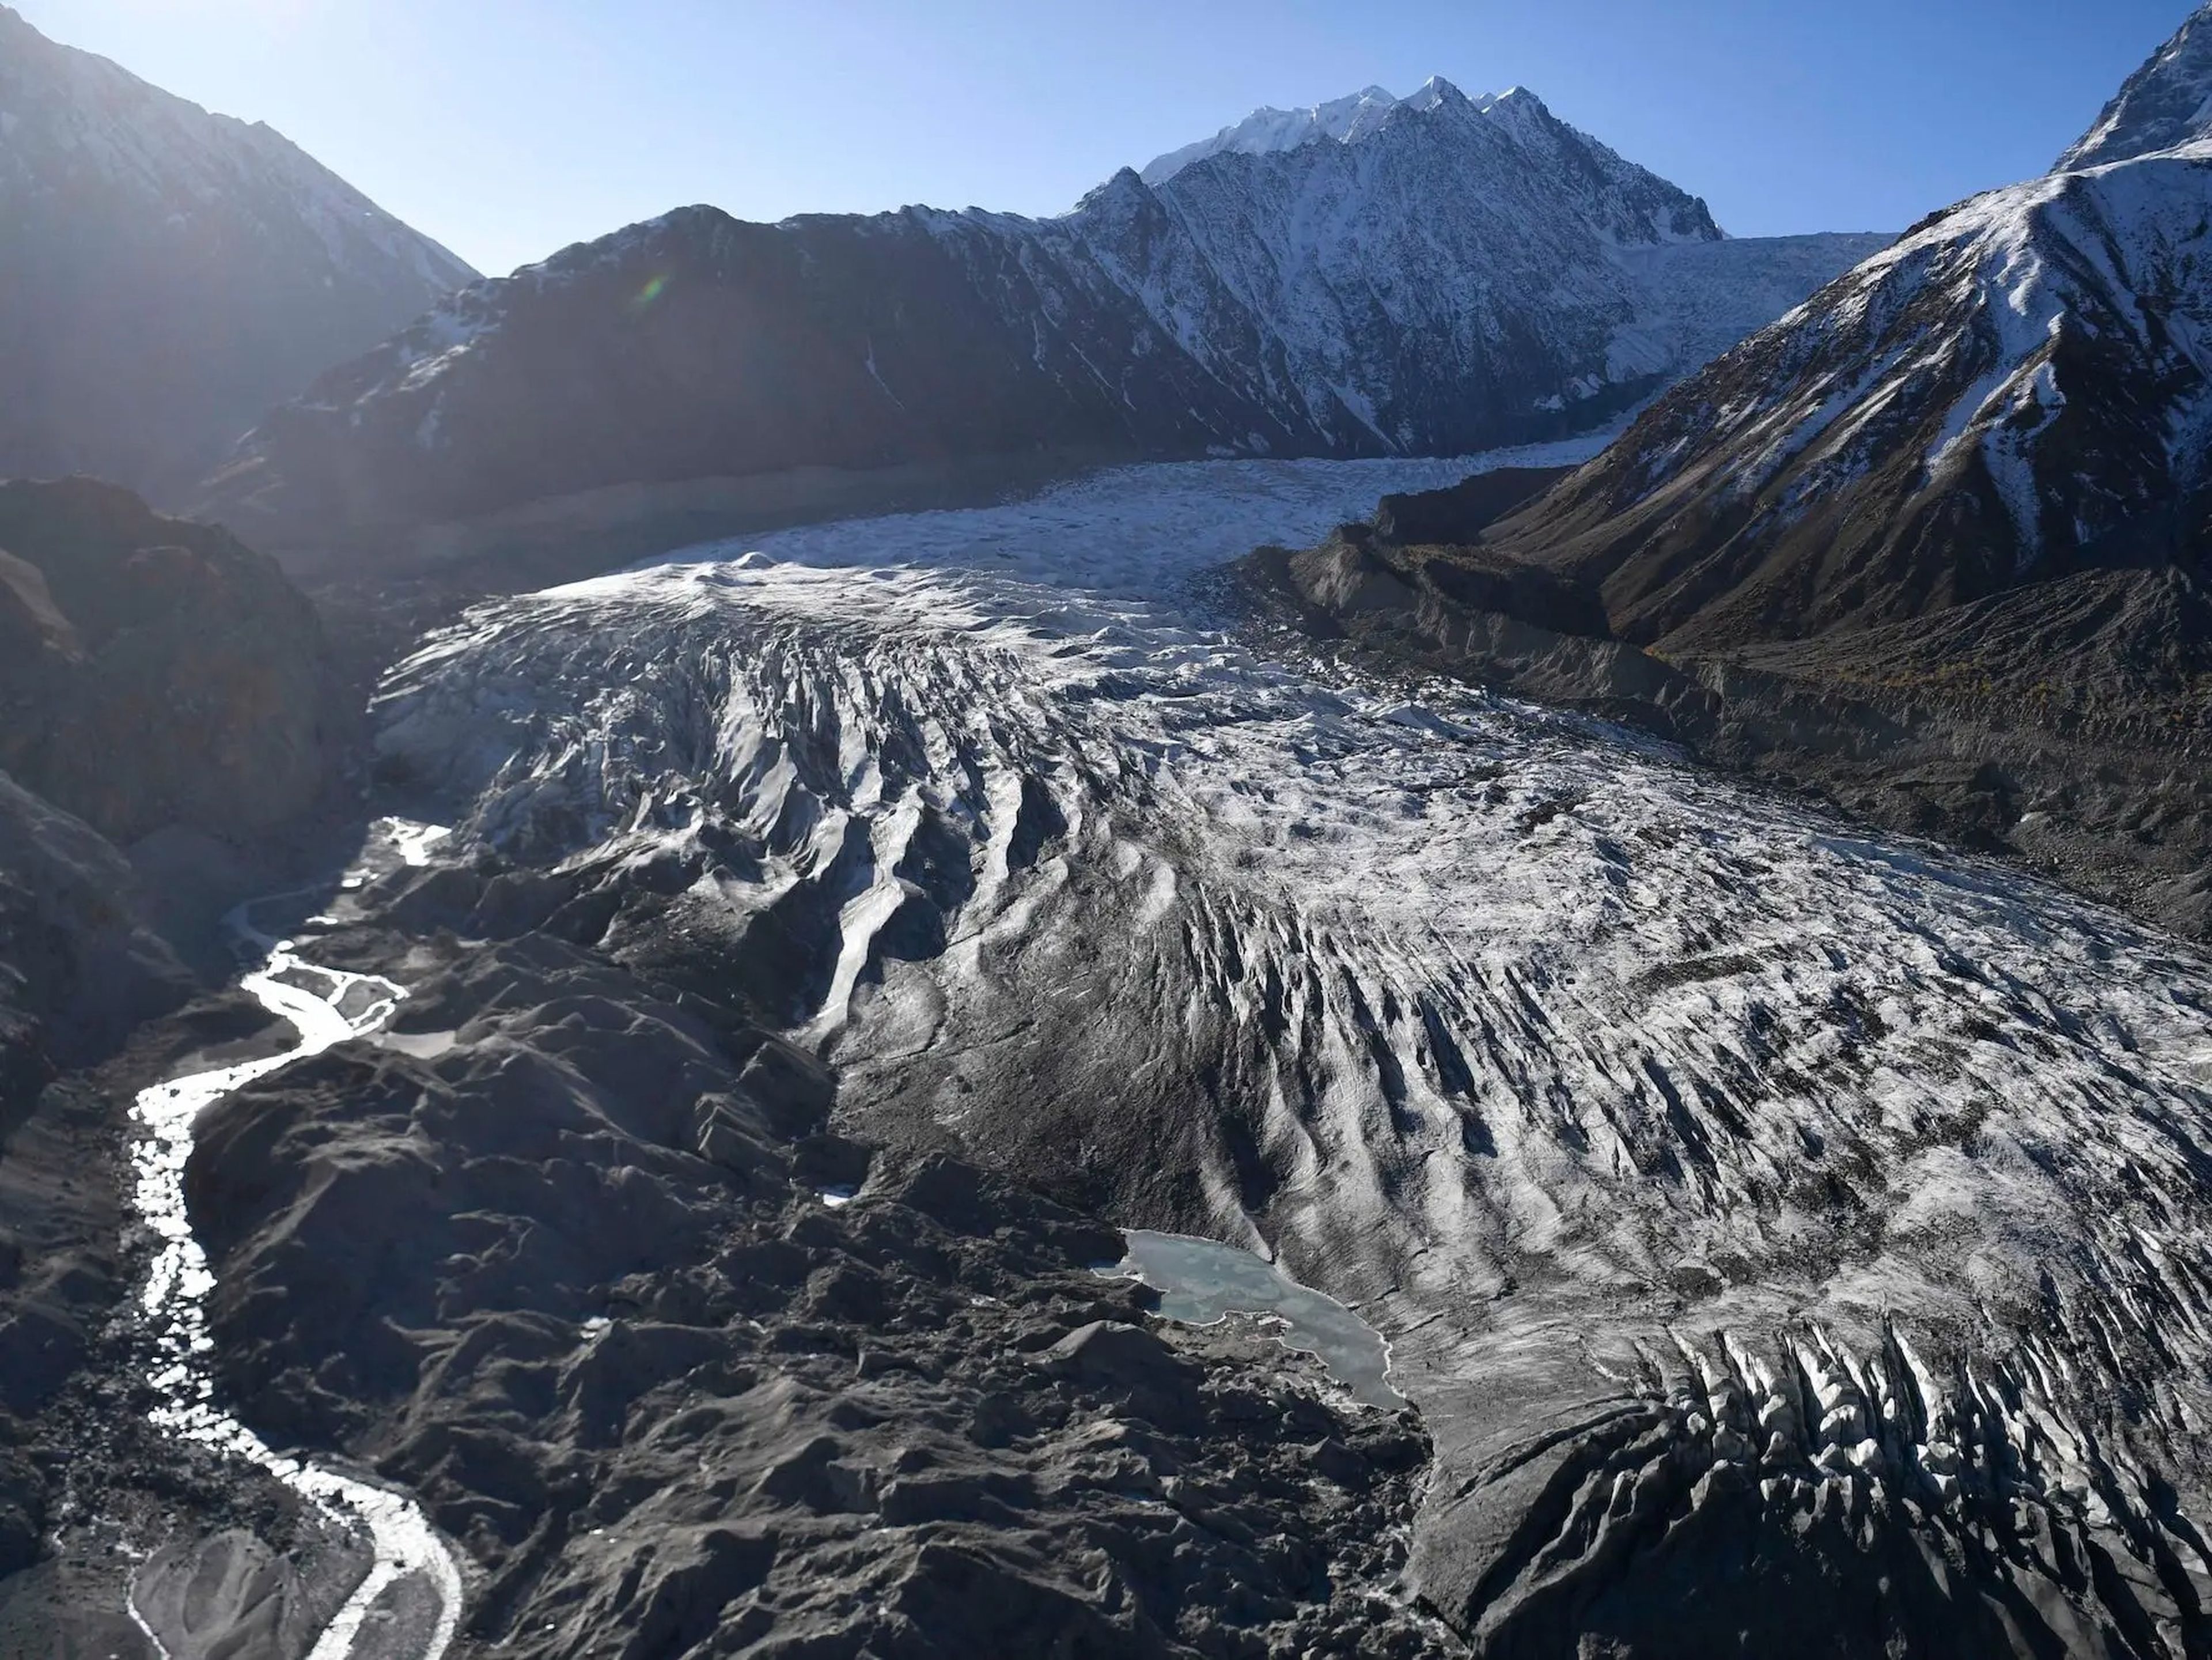 Vista general del glaciar Chiatibo en la cordillera del Hindu Kush el 16 de octubre de 2019 en el distrito de Chitral de la provincia de Khyber-Pakhunkwa, Pakistán.